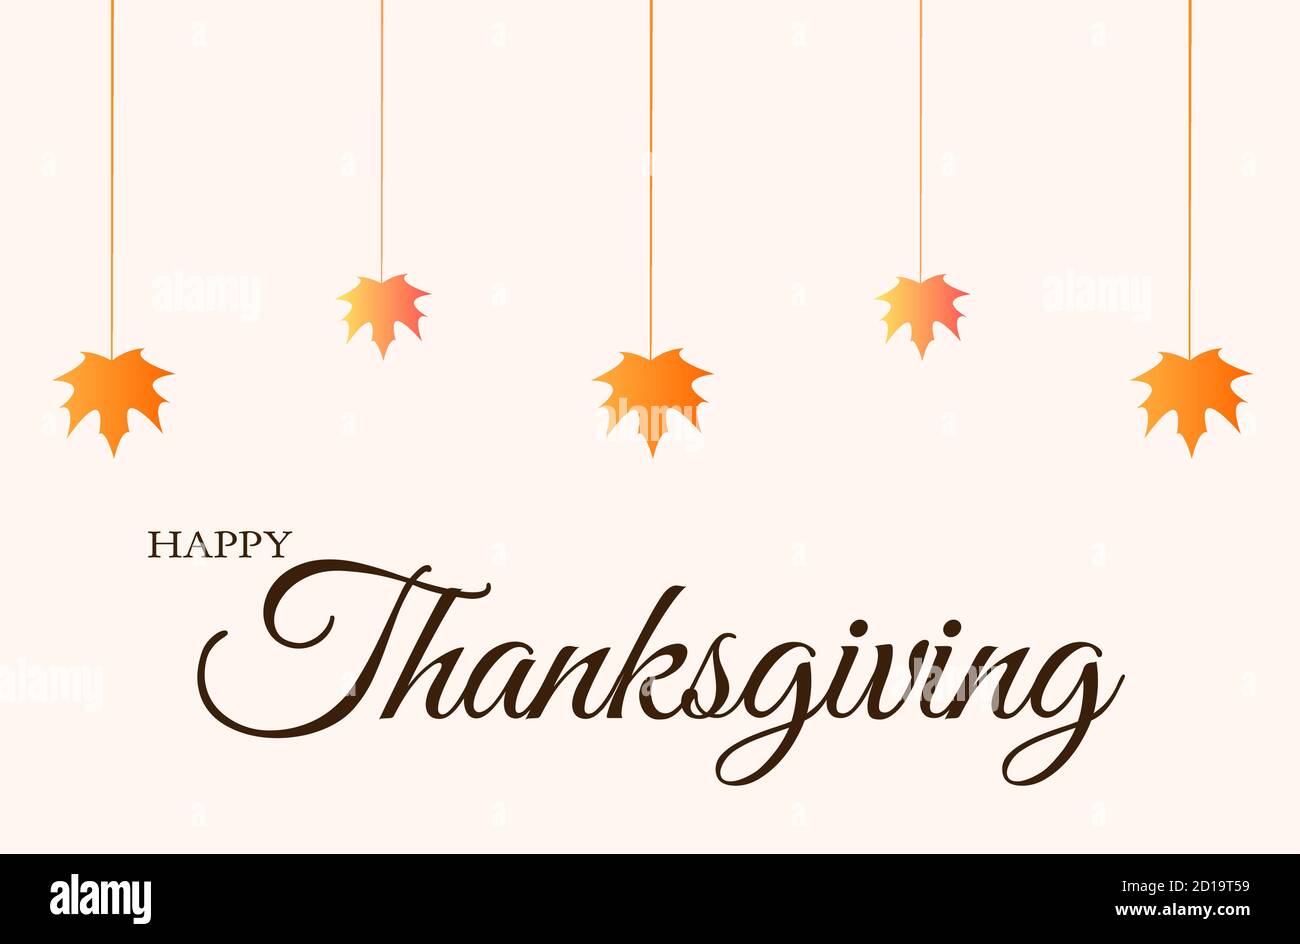 Happy Thanksgiving Essen, trinken und dankbar sein Zitat Feiertag Partei Poster oder Gruß Text Design Vorlage. Vektor Thanksgiving Herbst Kürbis und Stock Vektor